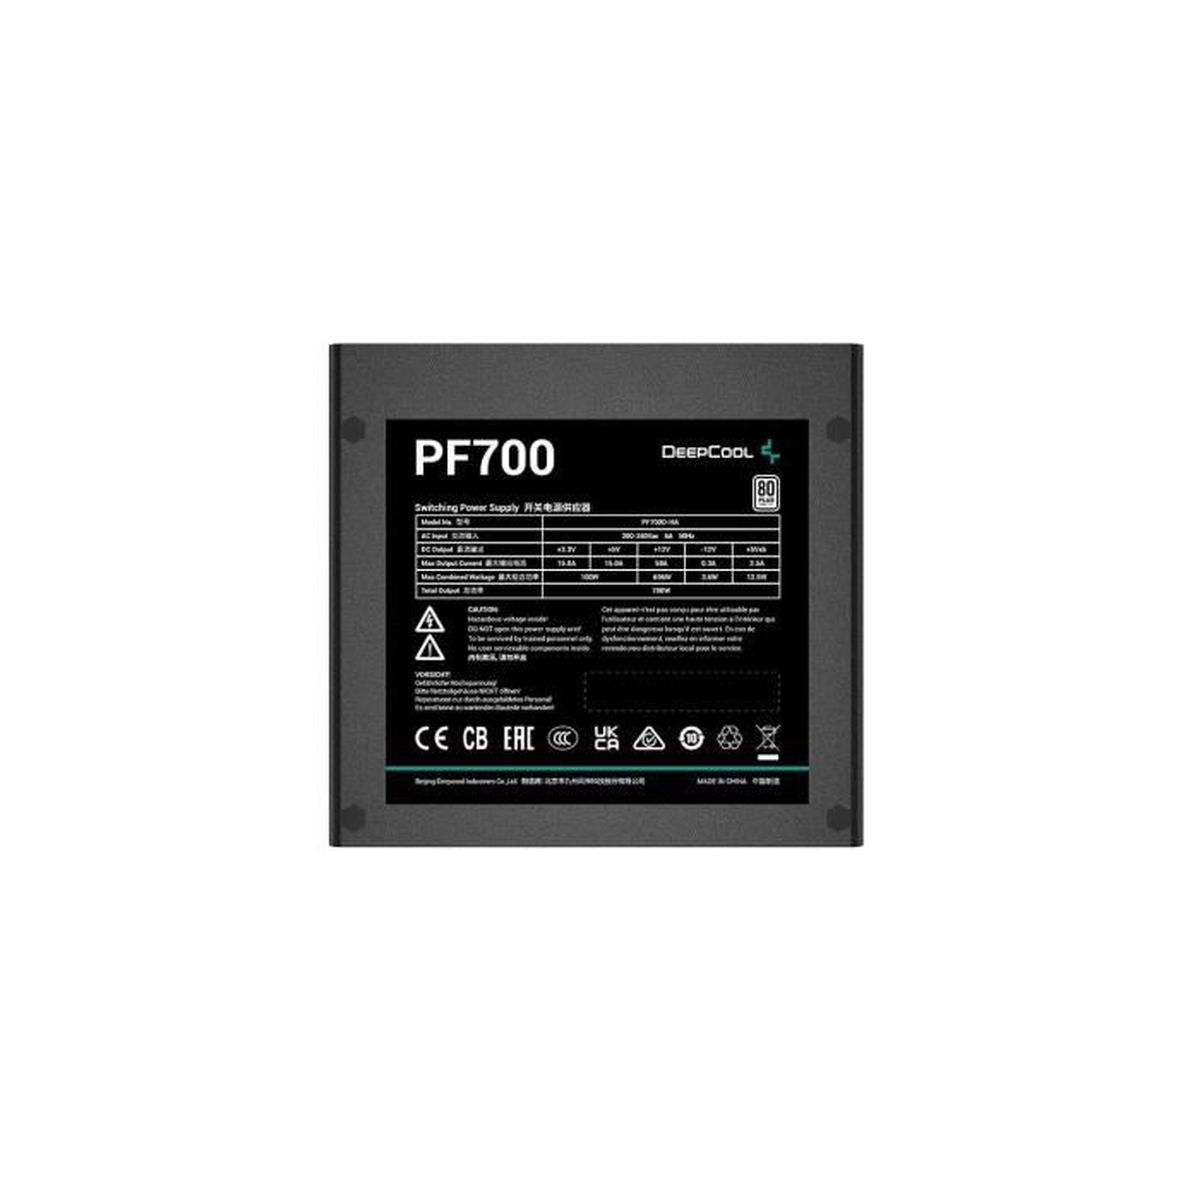 Watt 700 PF700 PC-Netzteil DEEPCOOL